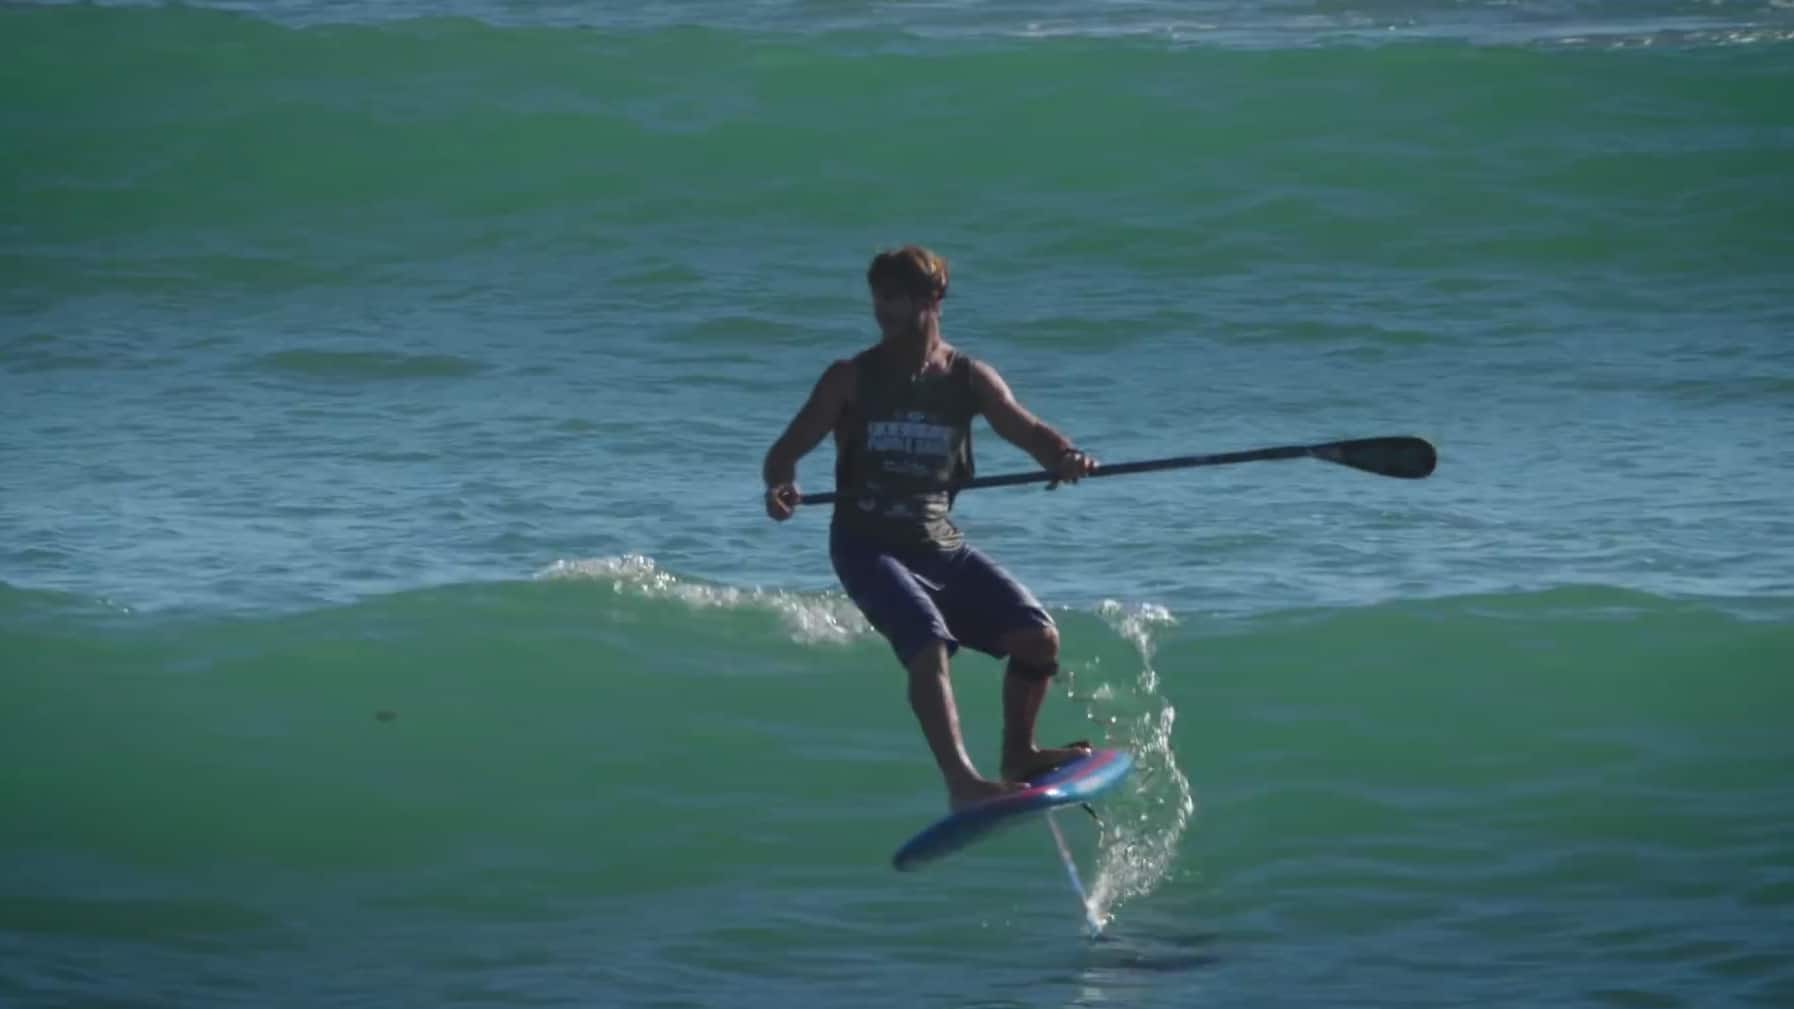 Vidéo de Matty Schweitzer en stand up paddle foil